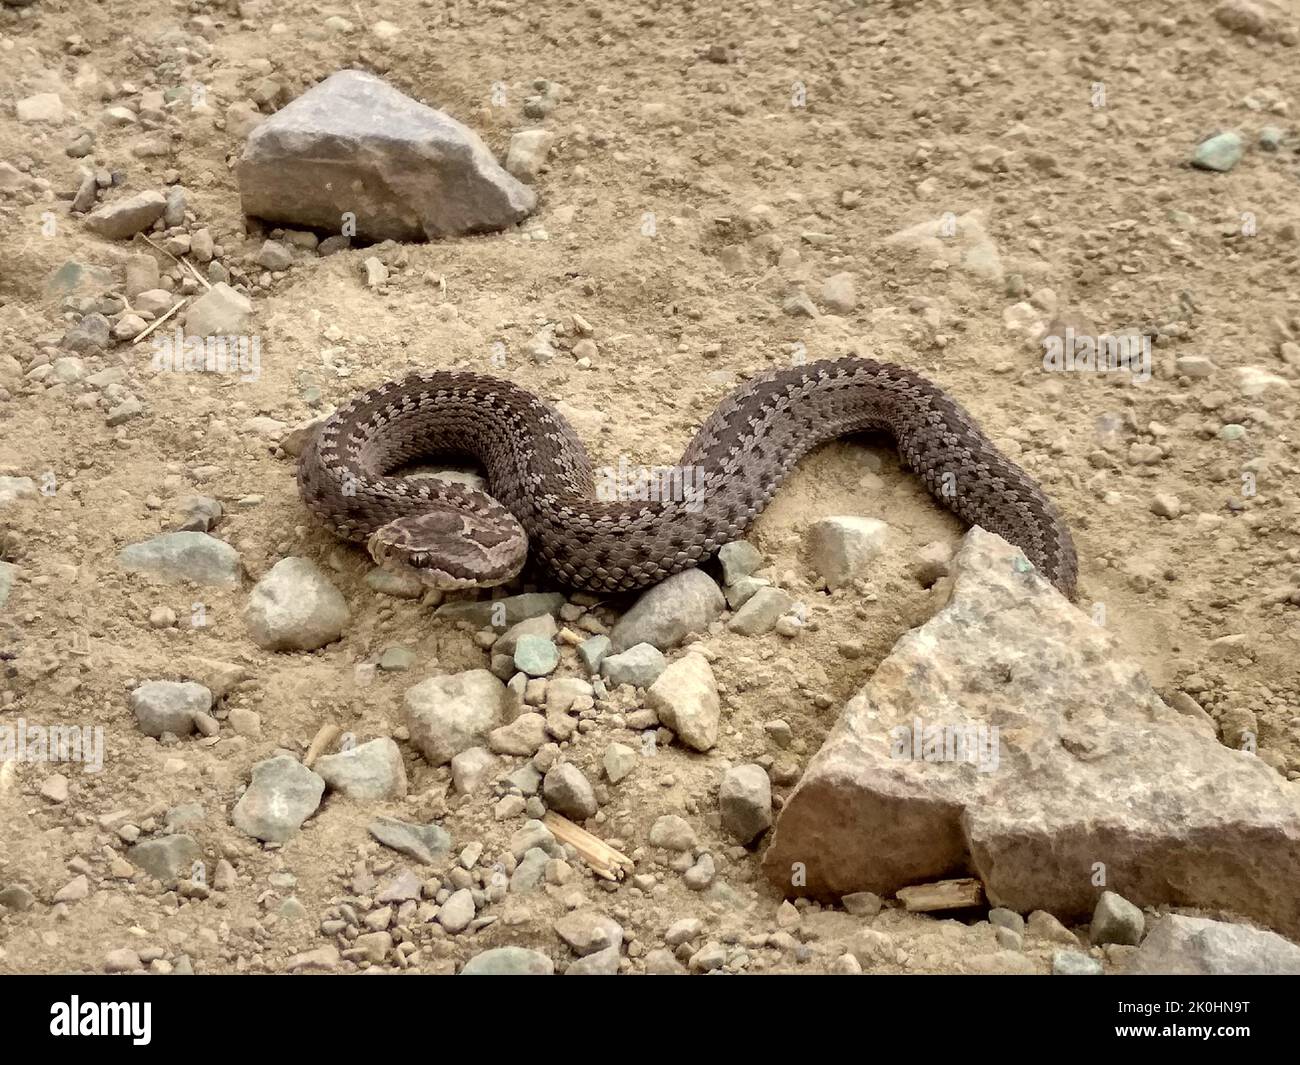 Eine Giftschlange auf dem Boden in der Nähe der Felsen Stockfotografie -  Alamy